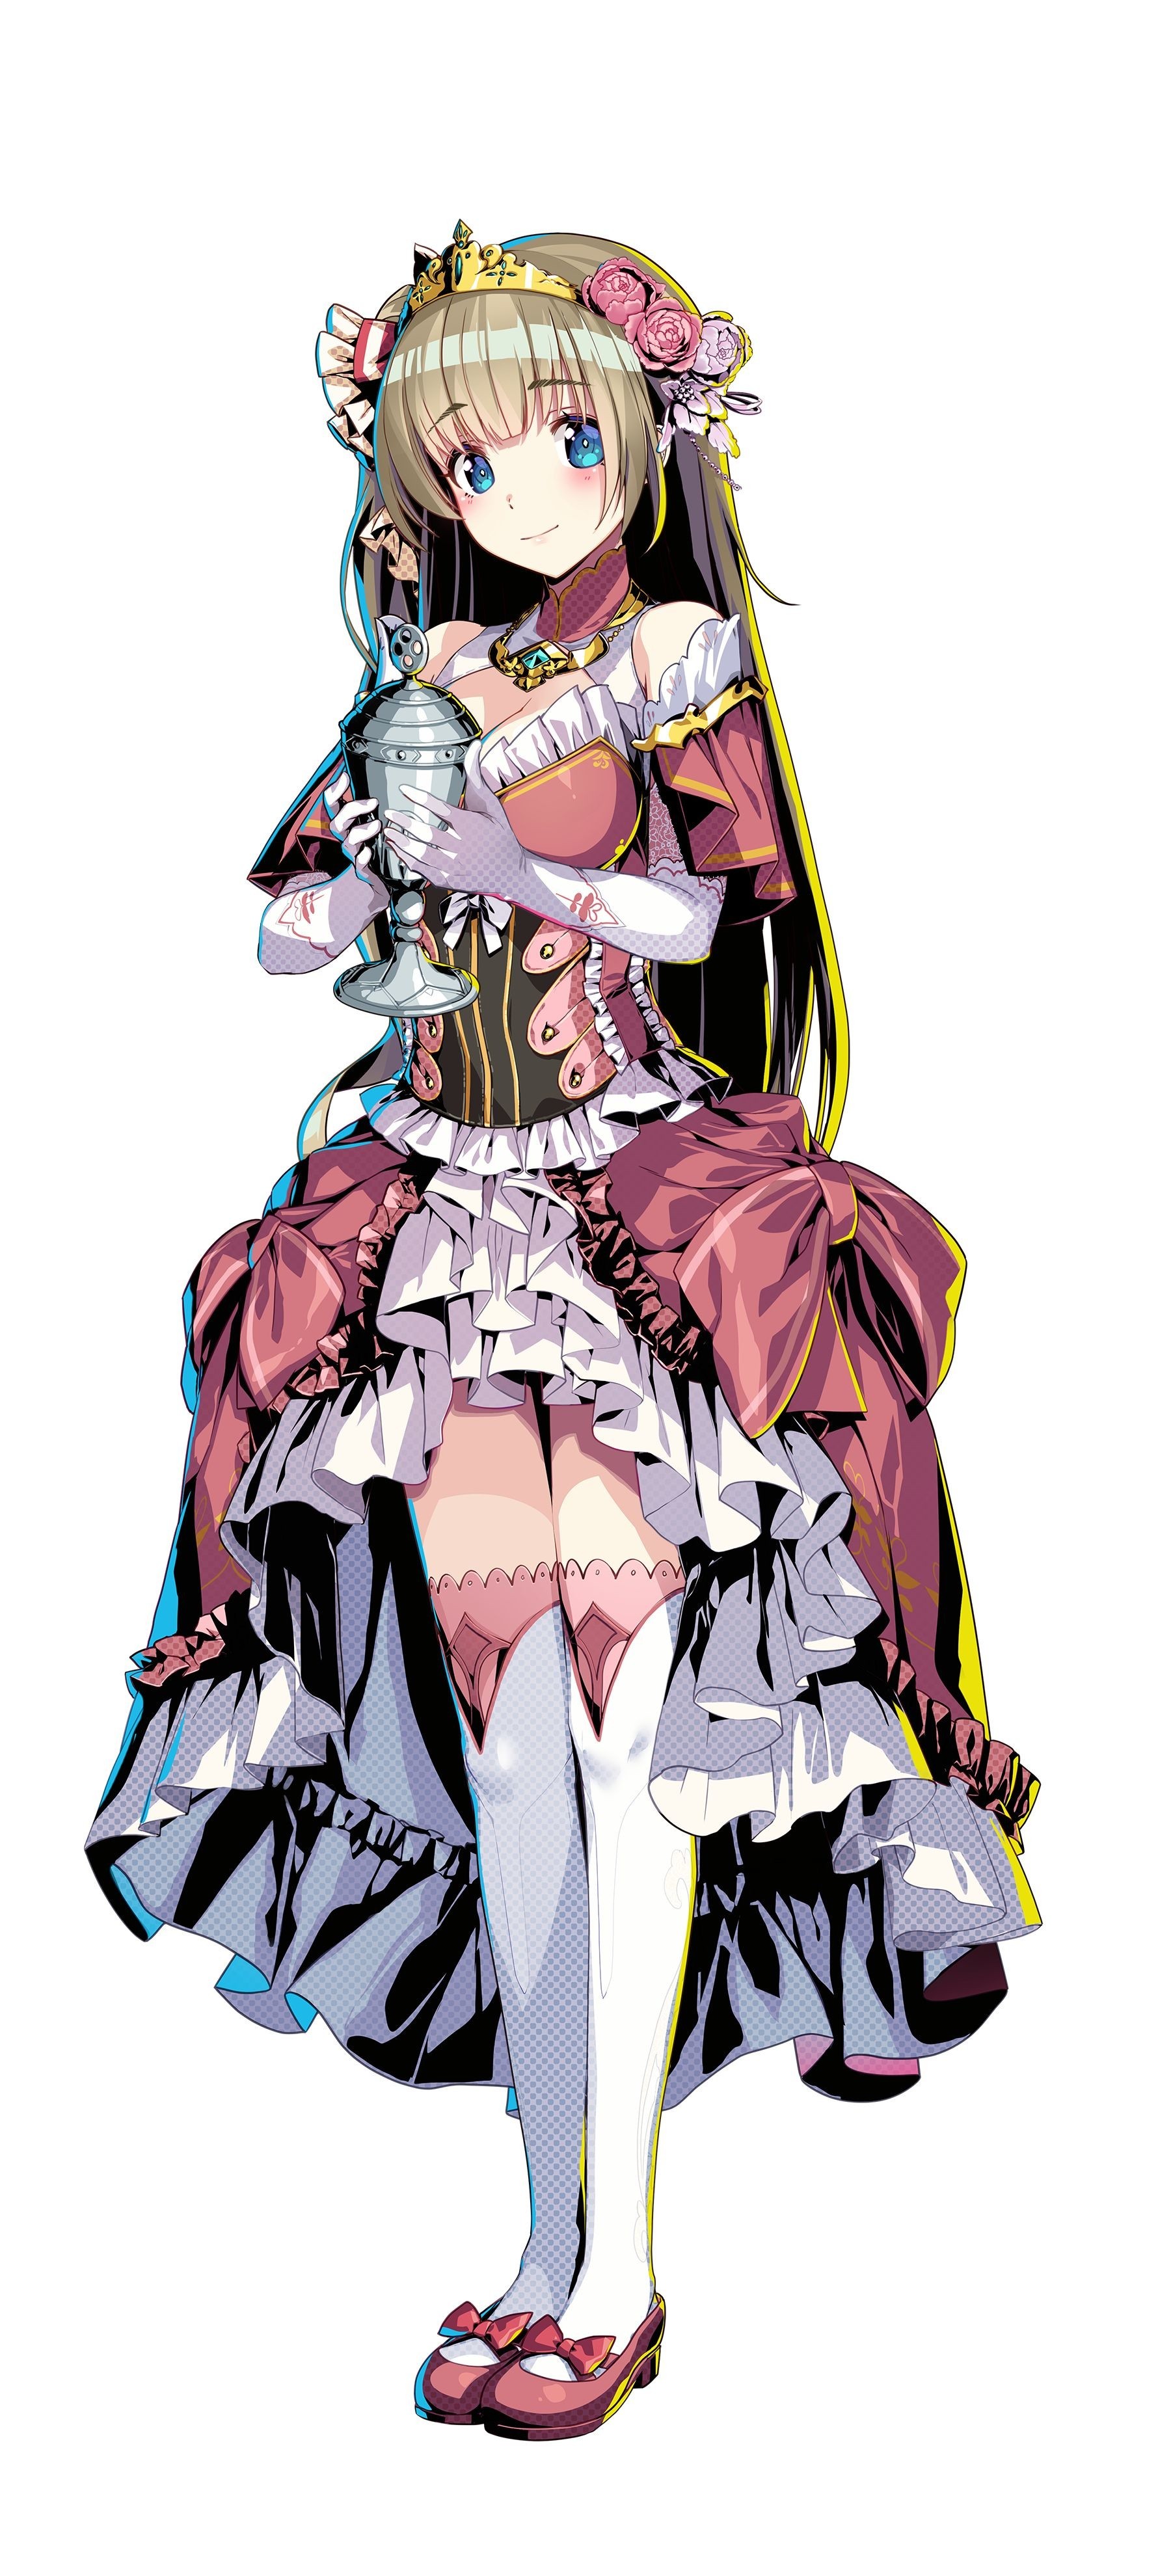 美少女塔防游戏《对战公主》2022 年 1 月登场 驱使性感公主攻城掠地